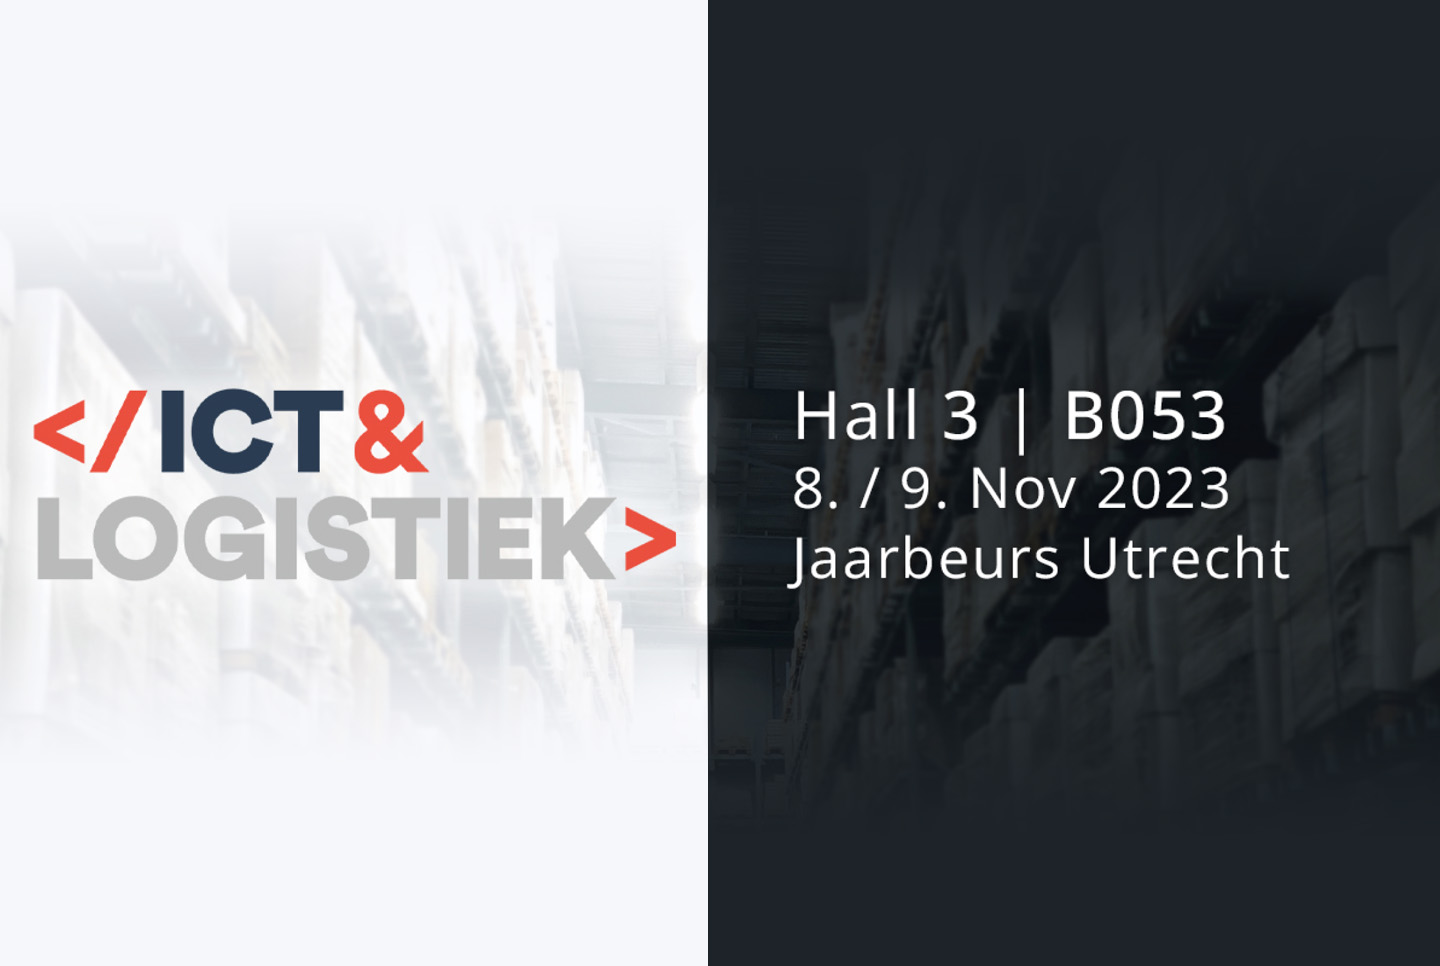 CIM auf der ICT & Logistiek Utrecht 2023